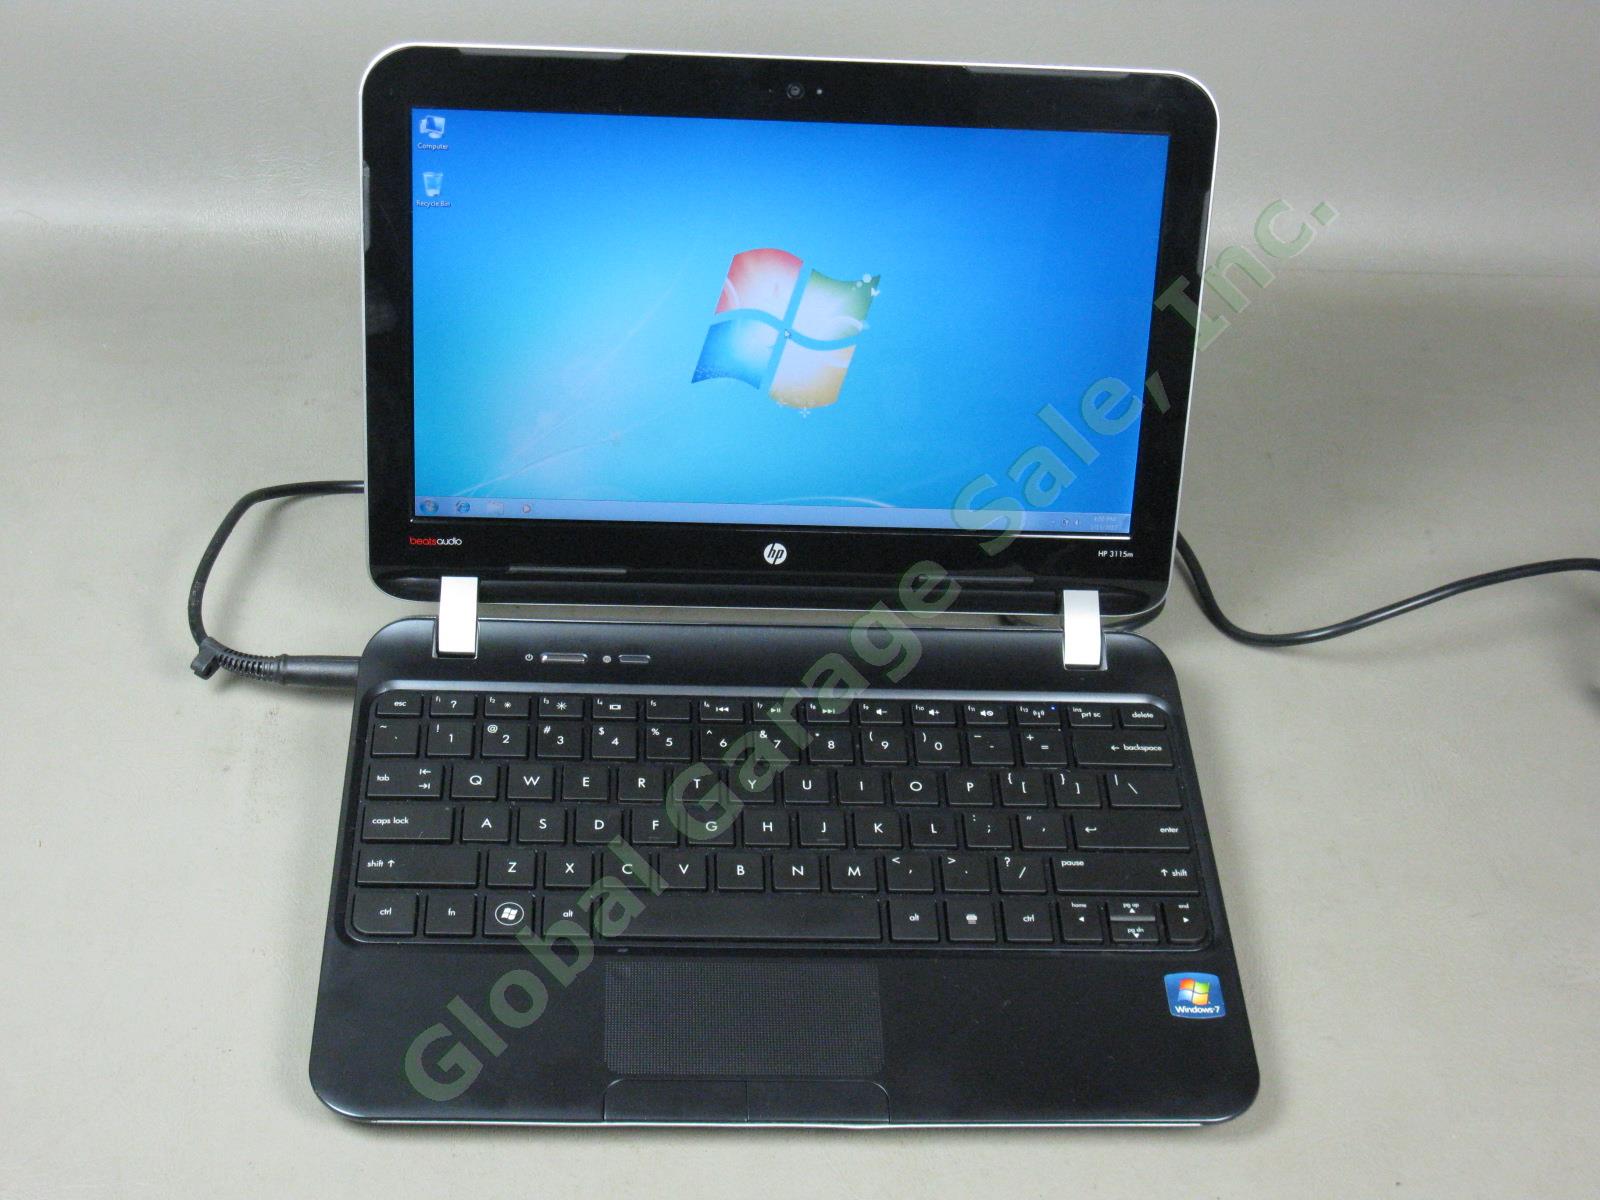 HP 3115m 11.6" Notebook Laptop AMD 1.65GHz 4GB 320GB Windows 7 Ultim Beats Audio